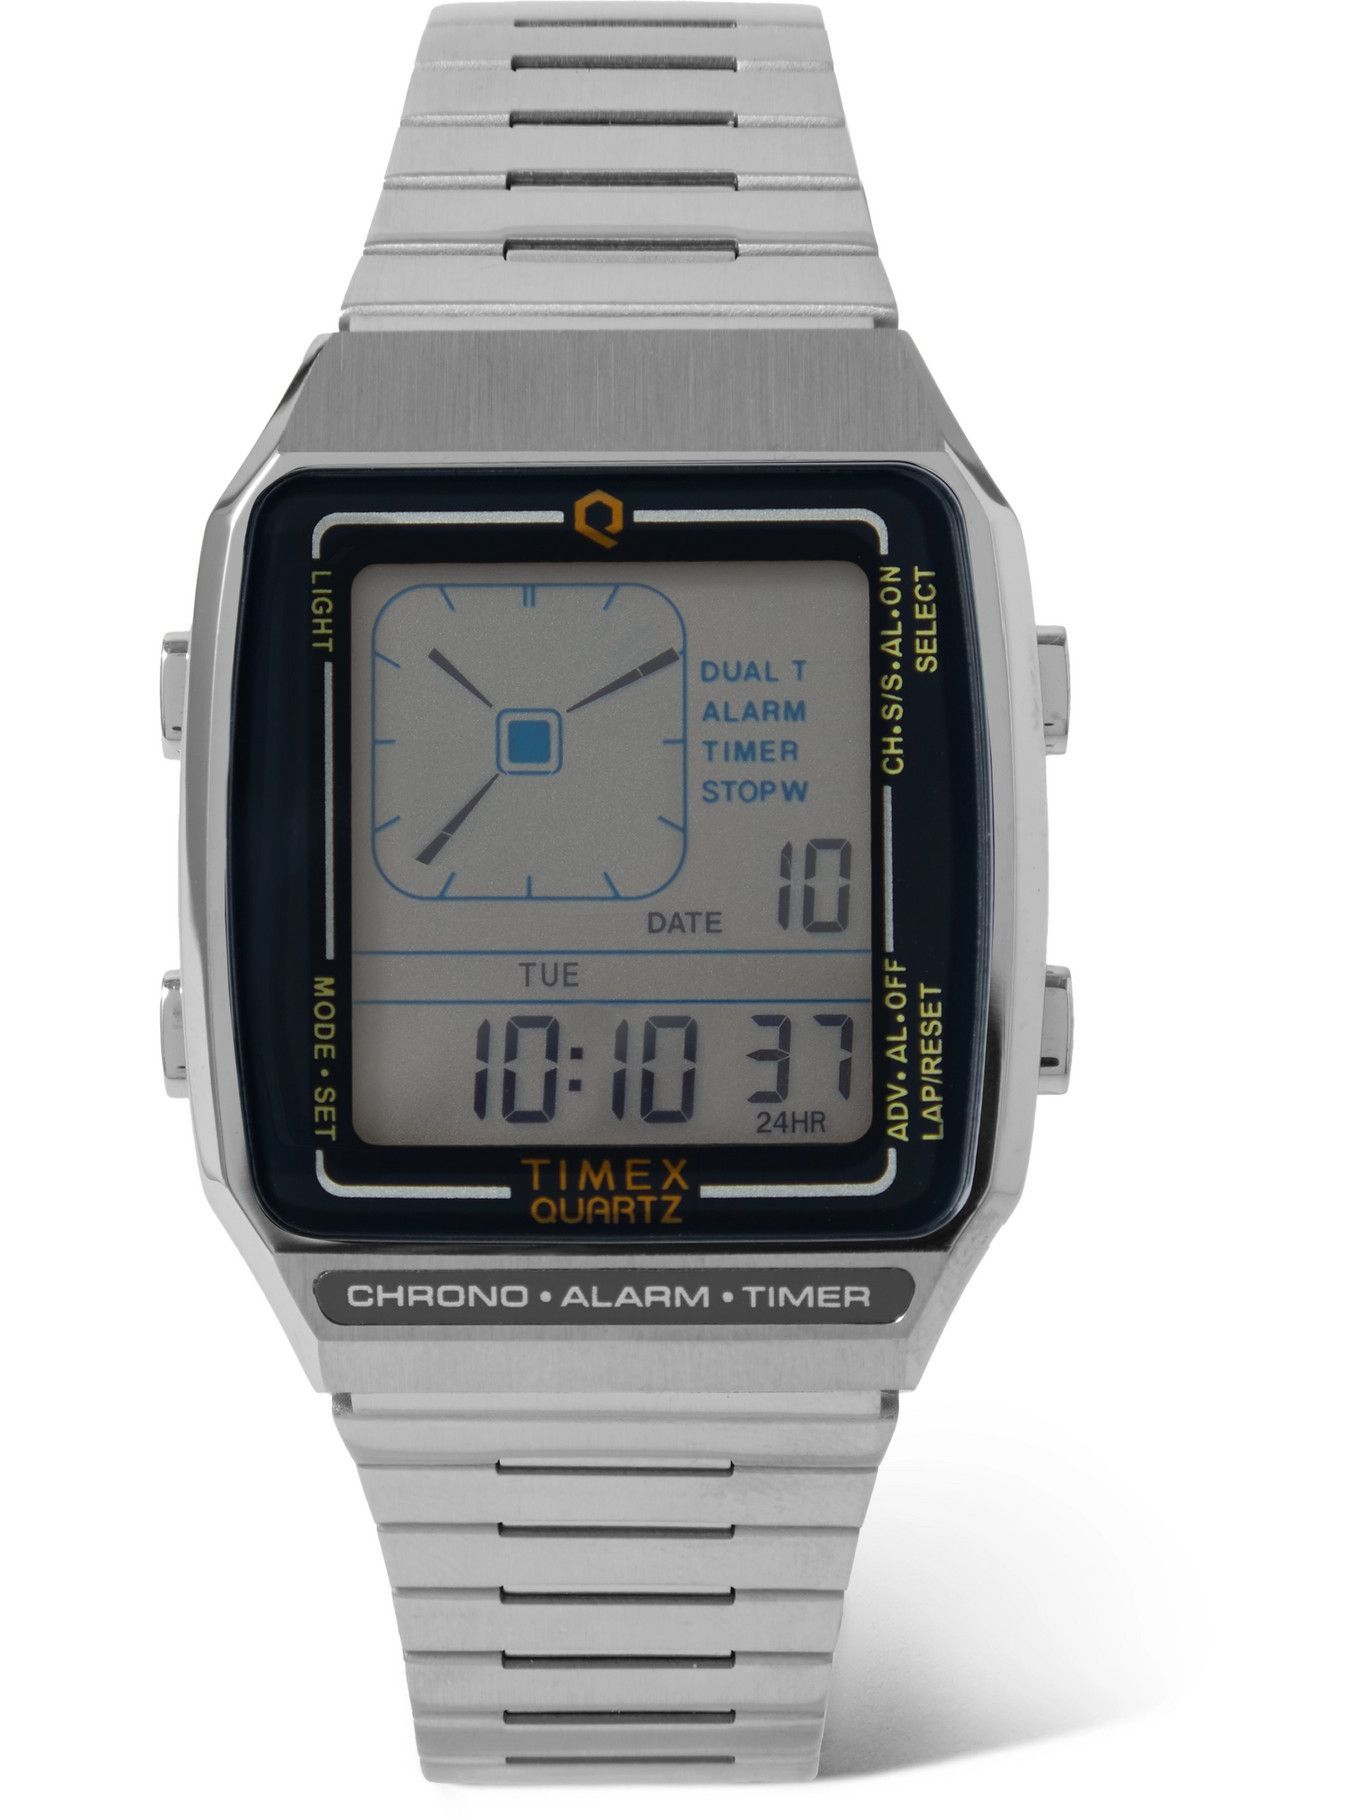 Timex - Q Timex Reissue LCA 32.5mm Stainless Steel Digital Watch Timex